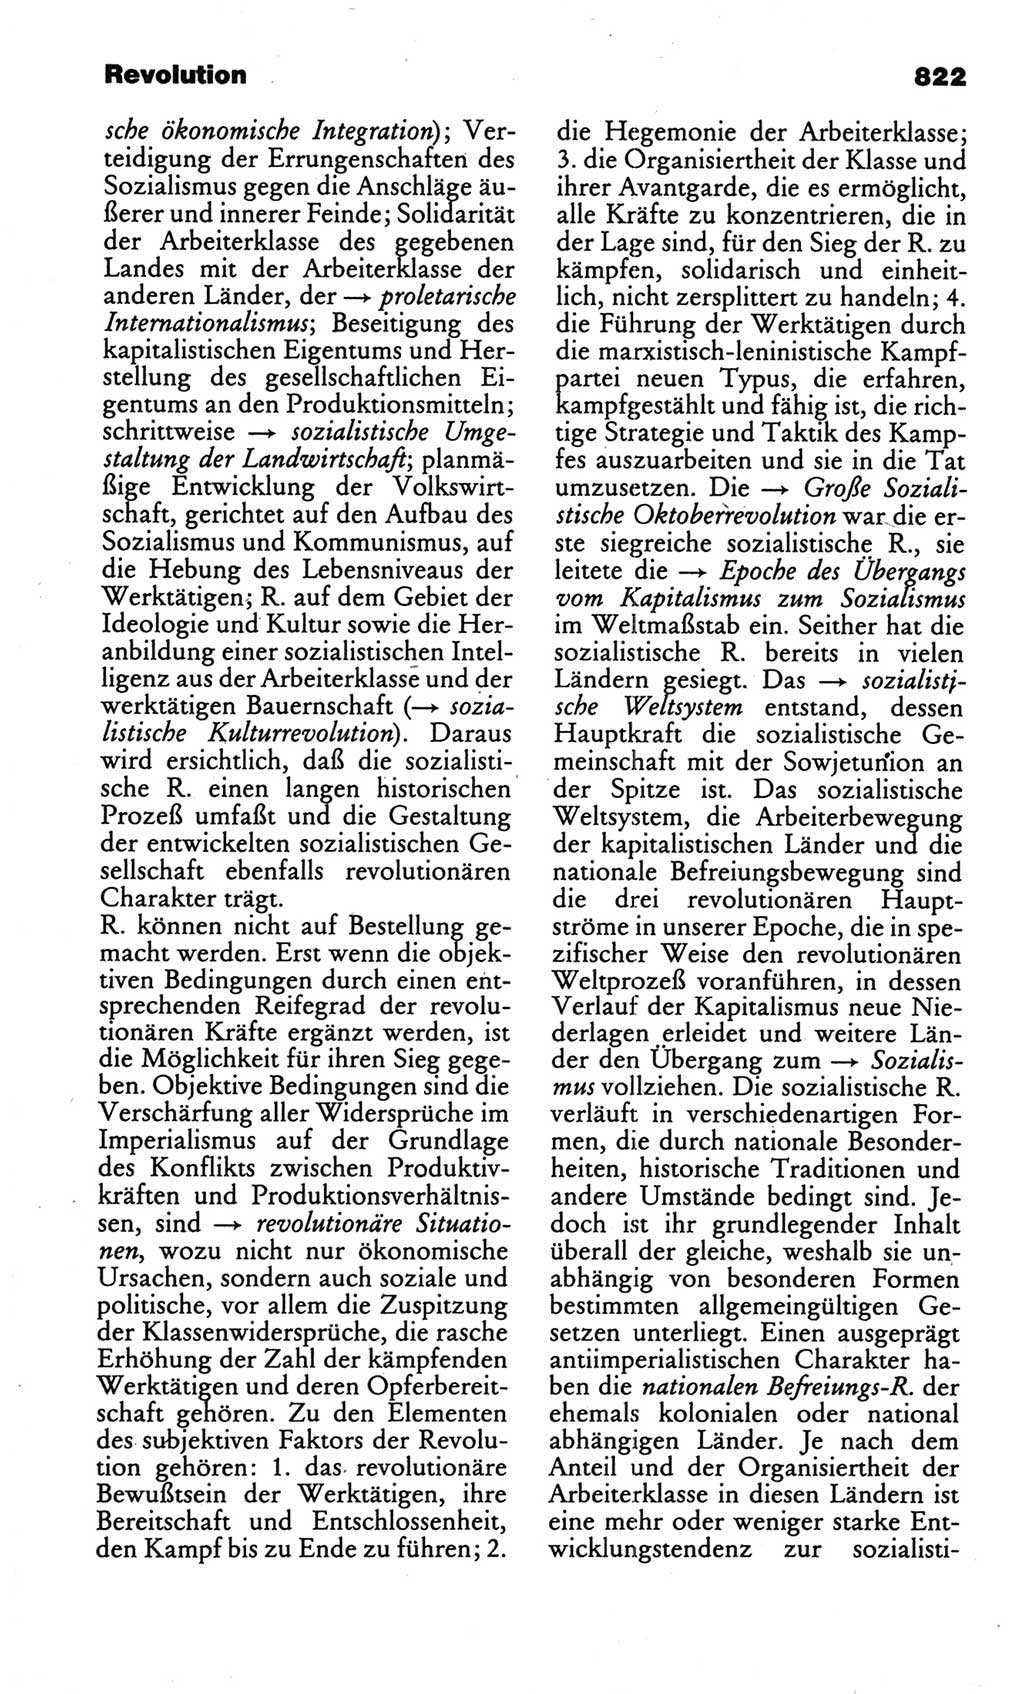 Kleines politisches Wörterbuch [Deutsche Demokratische Republik (DDR)] 1986, Seite 822 (Kl. pol. Wb. DDR 1986, S. 822)